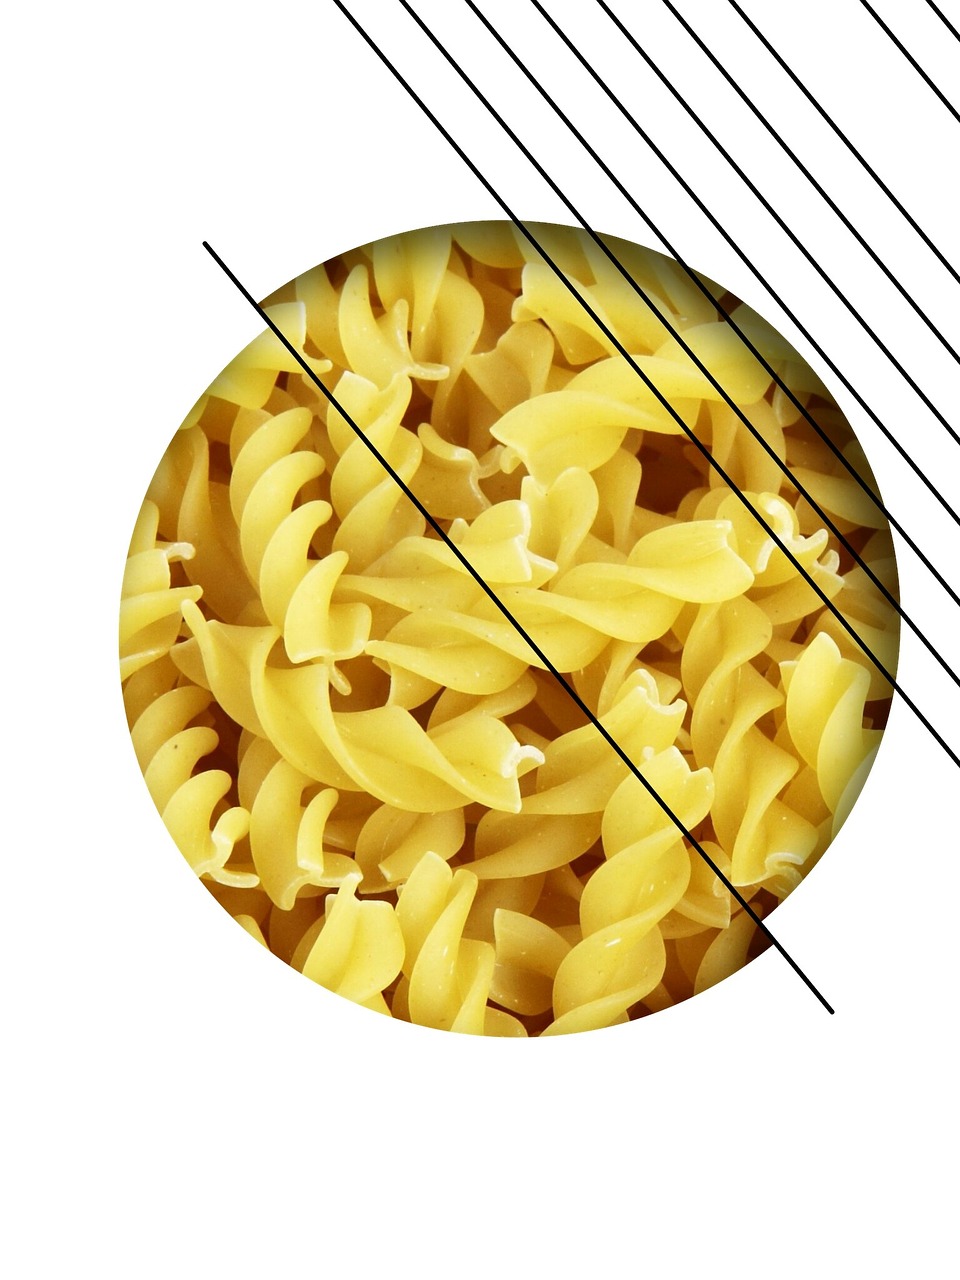 noodles spirals pasta free photo